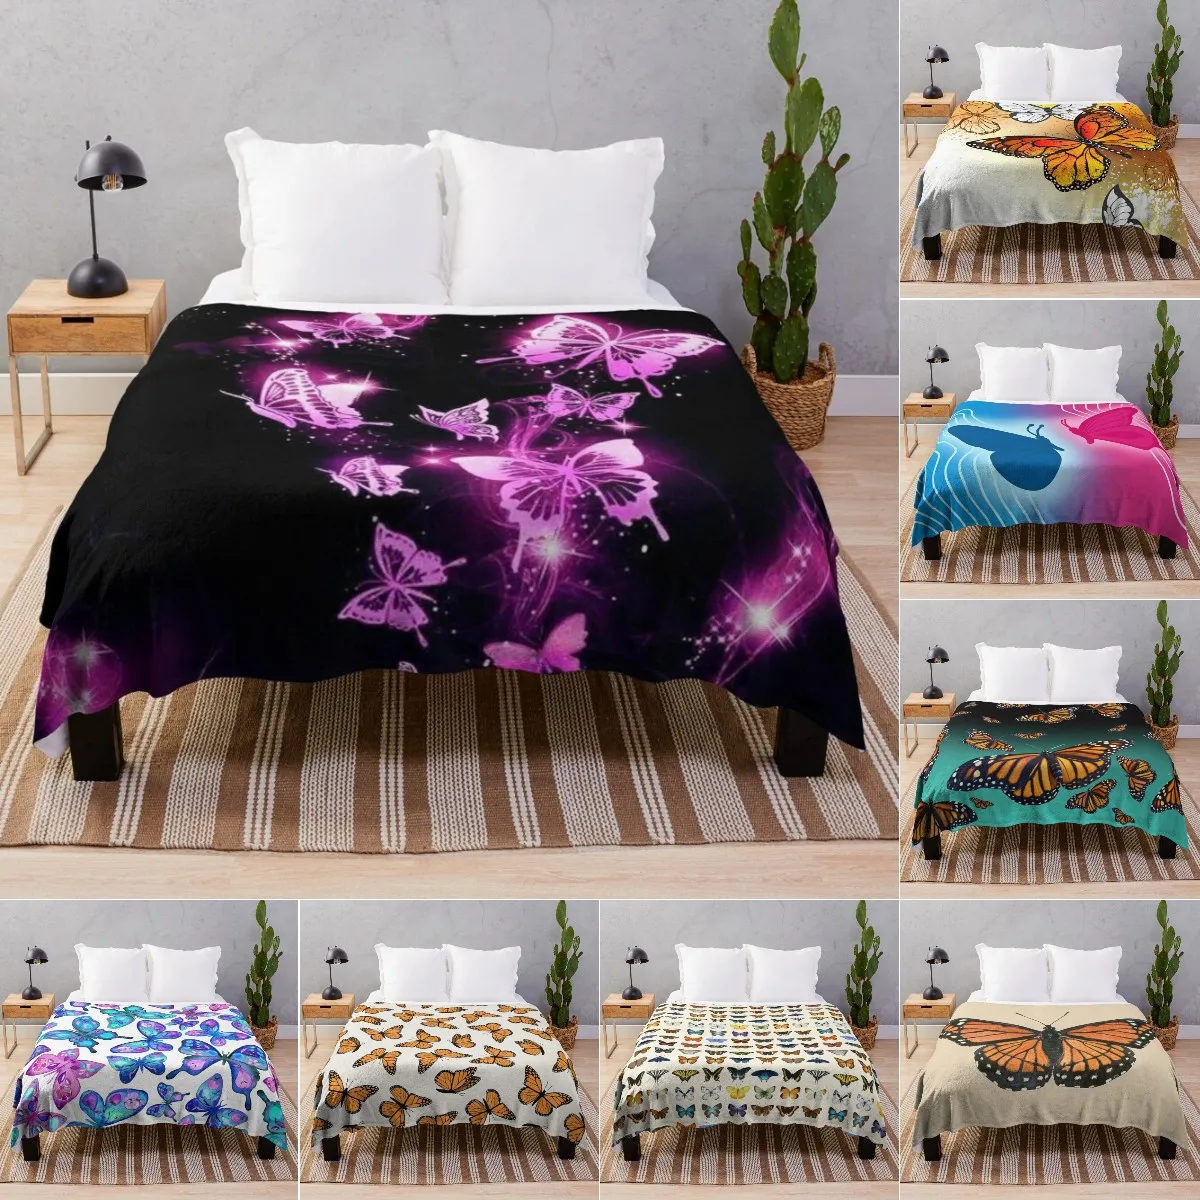 

Одеяло с бабочками Красивое Одеяло в форме бабочки ультра мягкие Одеяла Легкие удобные для кровати диван Королева кинг двойной размер